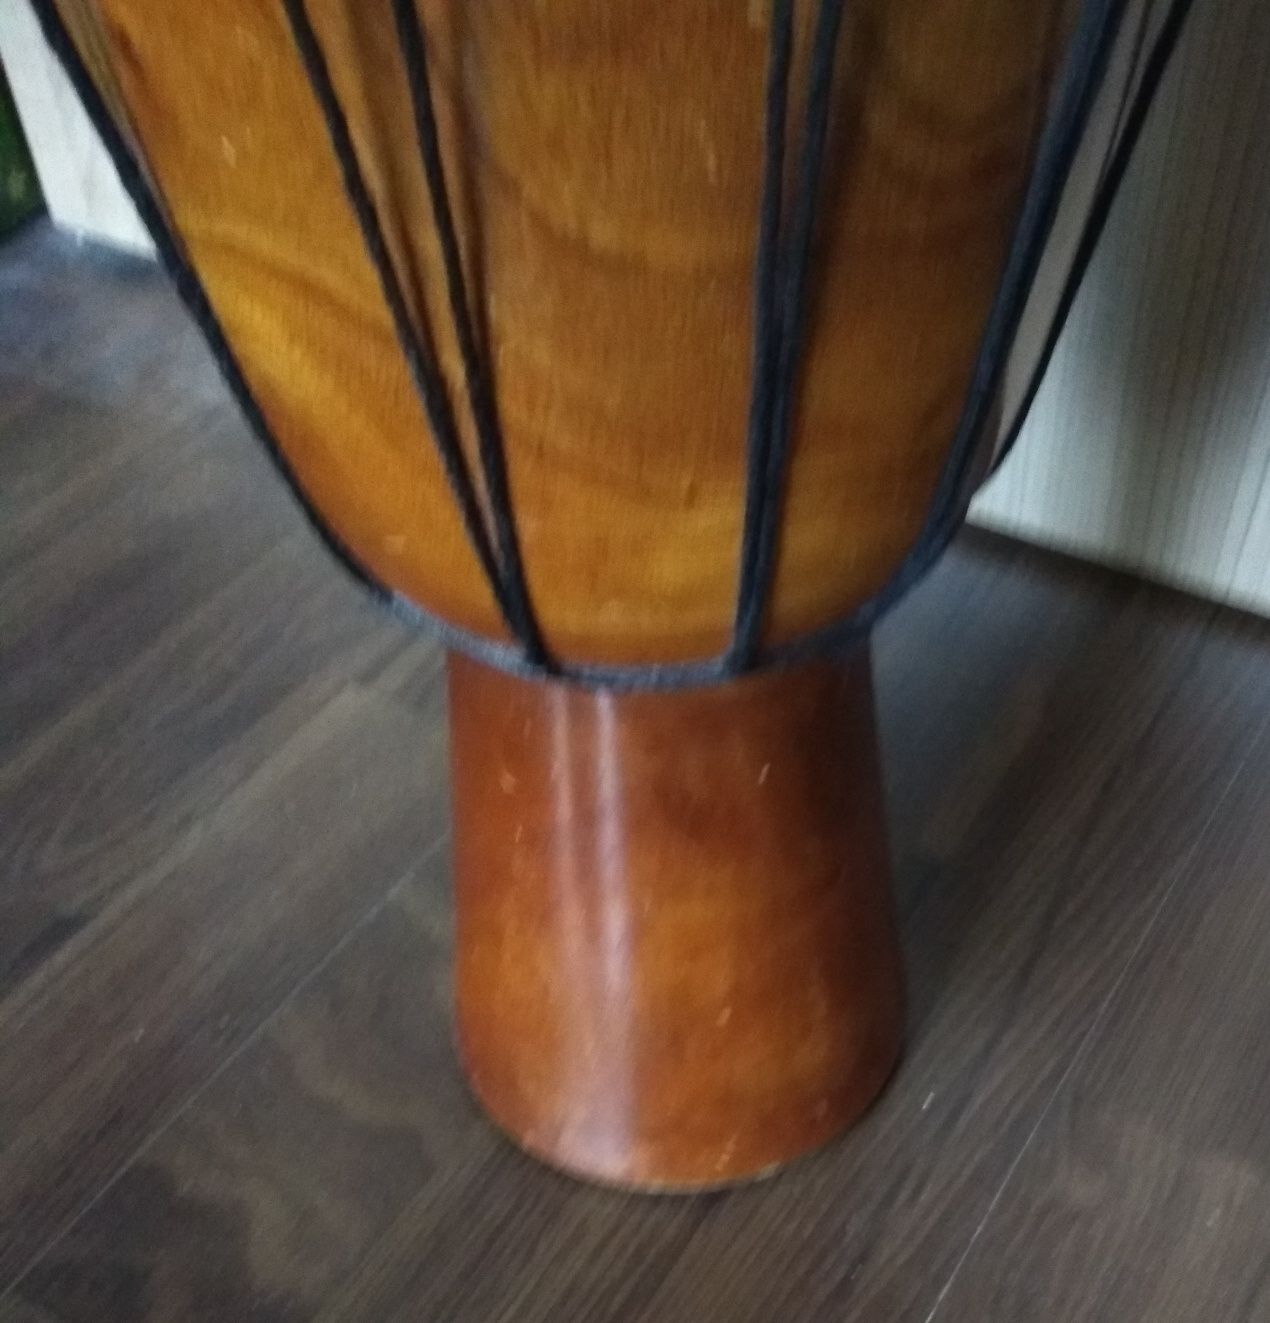 DARABANĂ (tobă africană, de mână) din lemn și cu  membrană din piele n